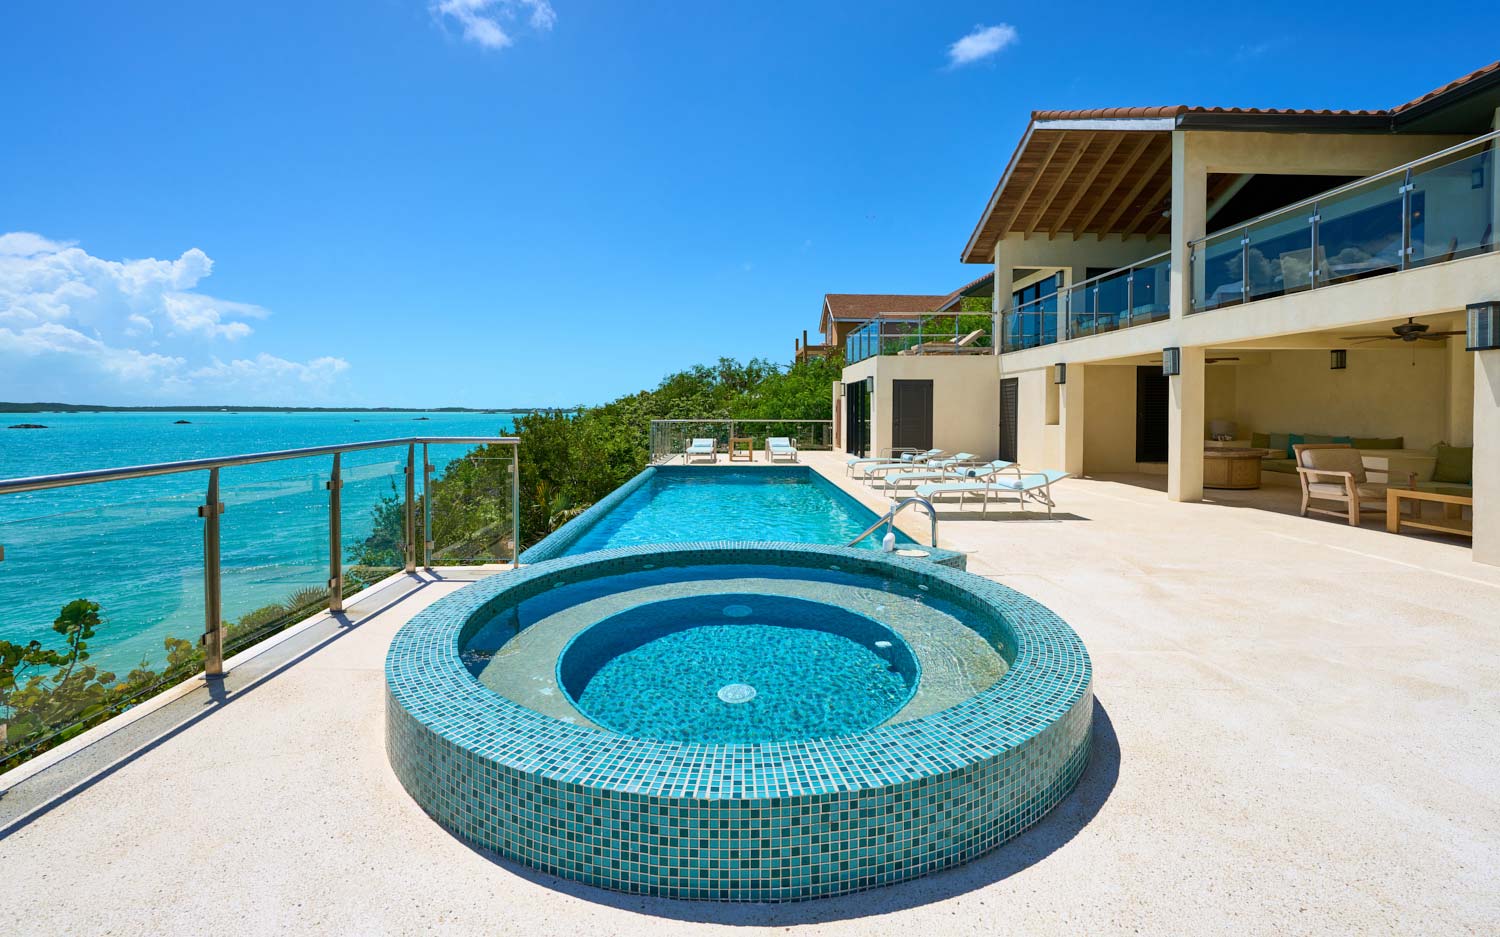 Turks and Caicos Vacation Villa Rentals - Alta Bella